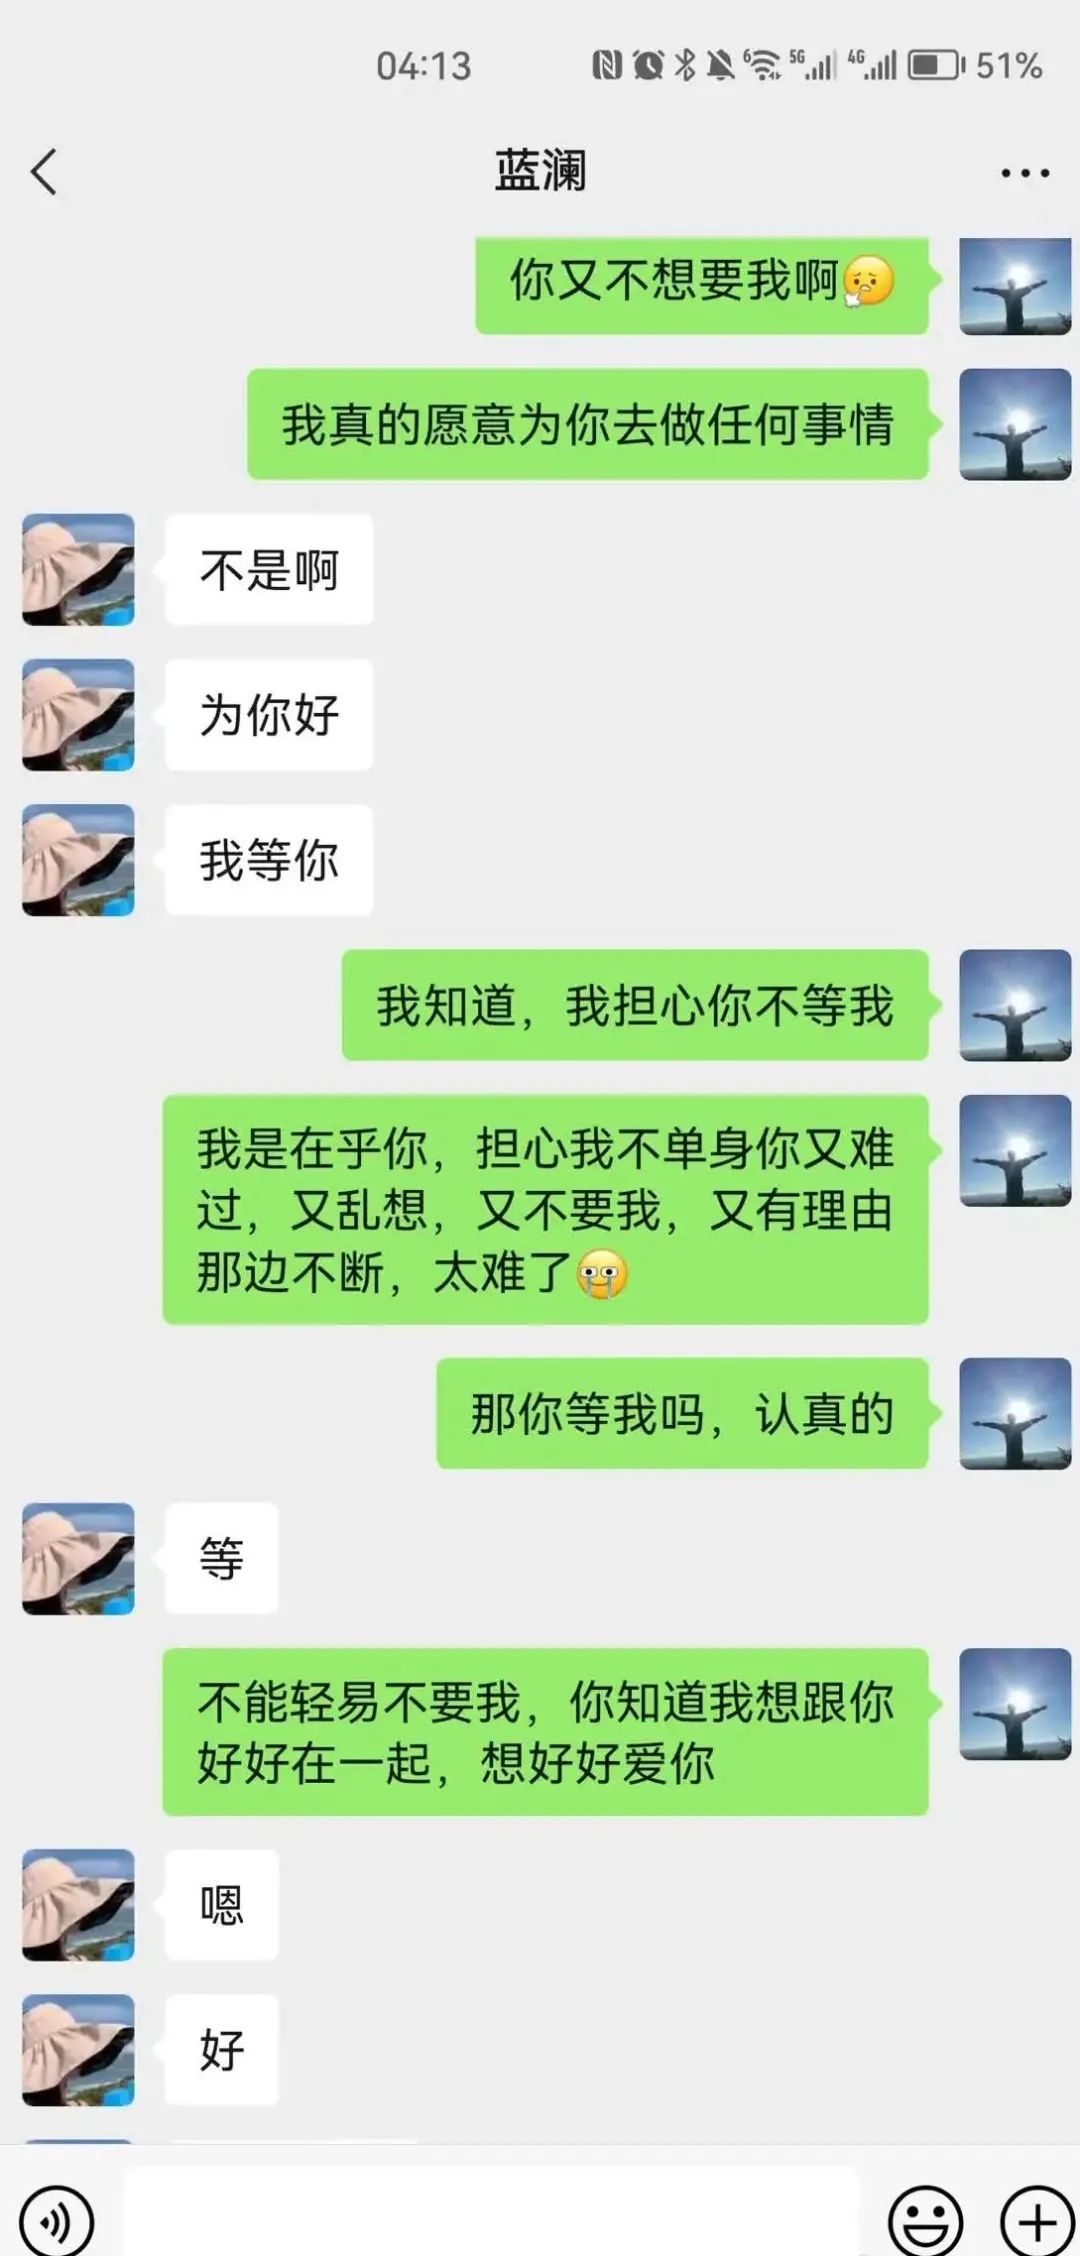 戴璐事件，我们欠扬州副市长张礼涛一个道歉，原来他一直在"背锅" - 知乎